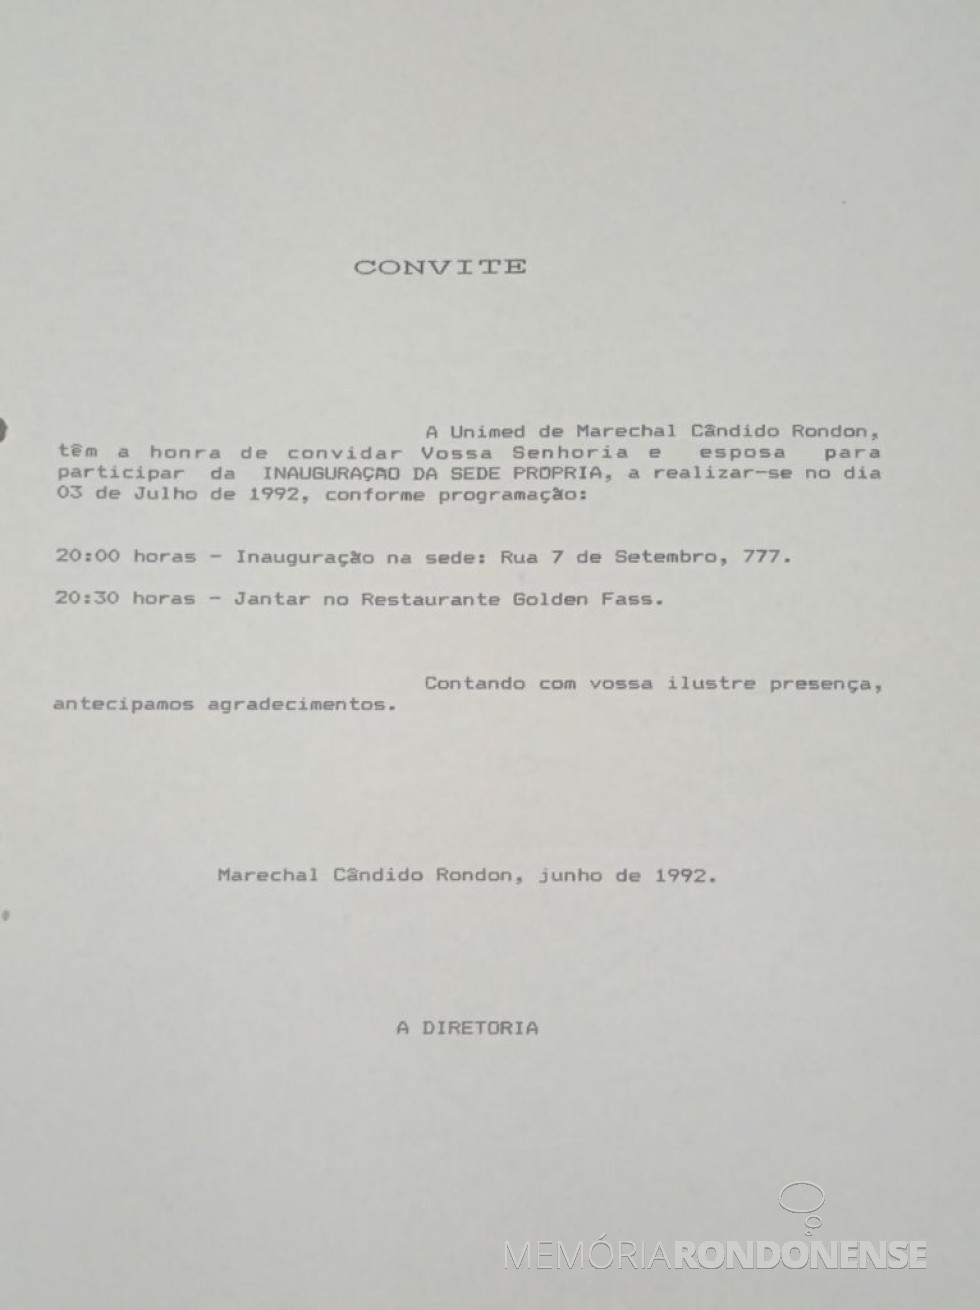 || Convite da Unimed Marechal Cândido Rondon à Câmara Vereadores para participarem da inauguração da sede própria da cooperativa médica, em julho de 1992.
Imagem: Acervo Edilidade citada - FOTO 3 - 